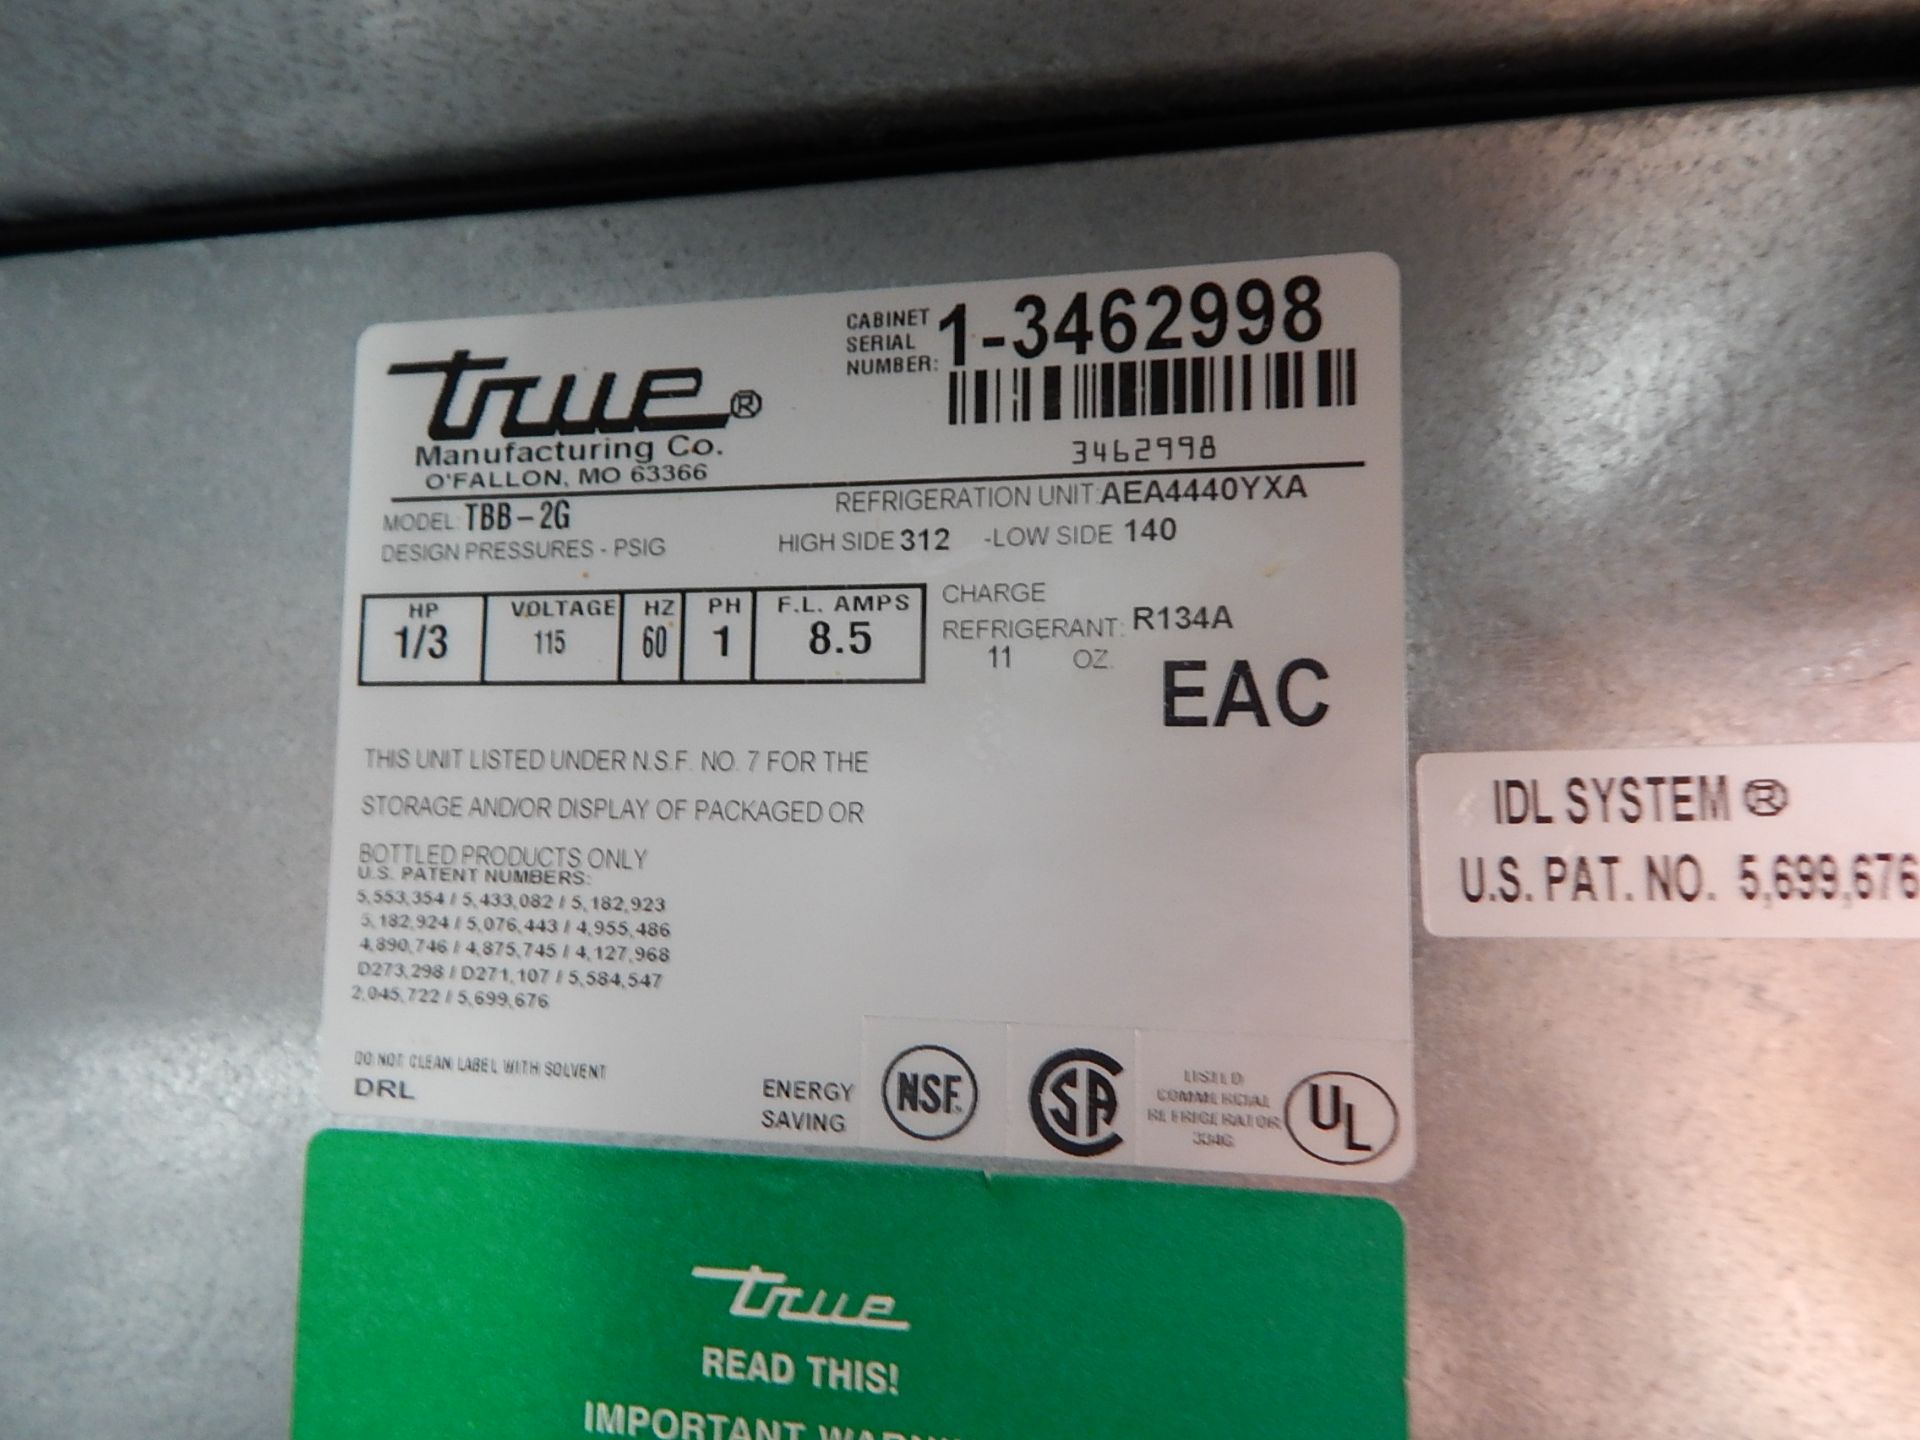 True Model TBB-2G 2-Glass Door Back Bar Refrigerator, SN 1-3462998 - Image 4 of 6